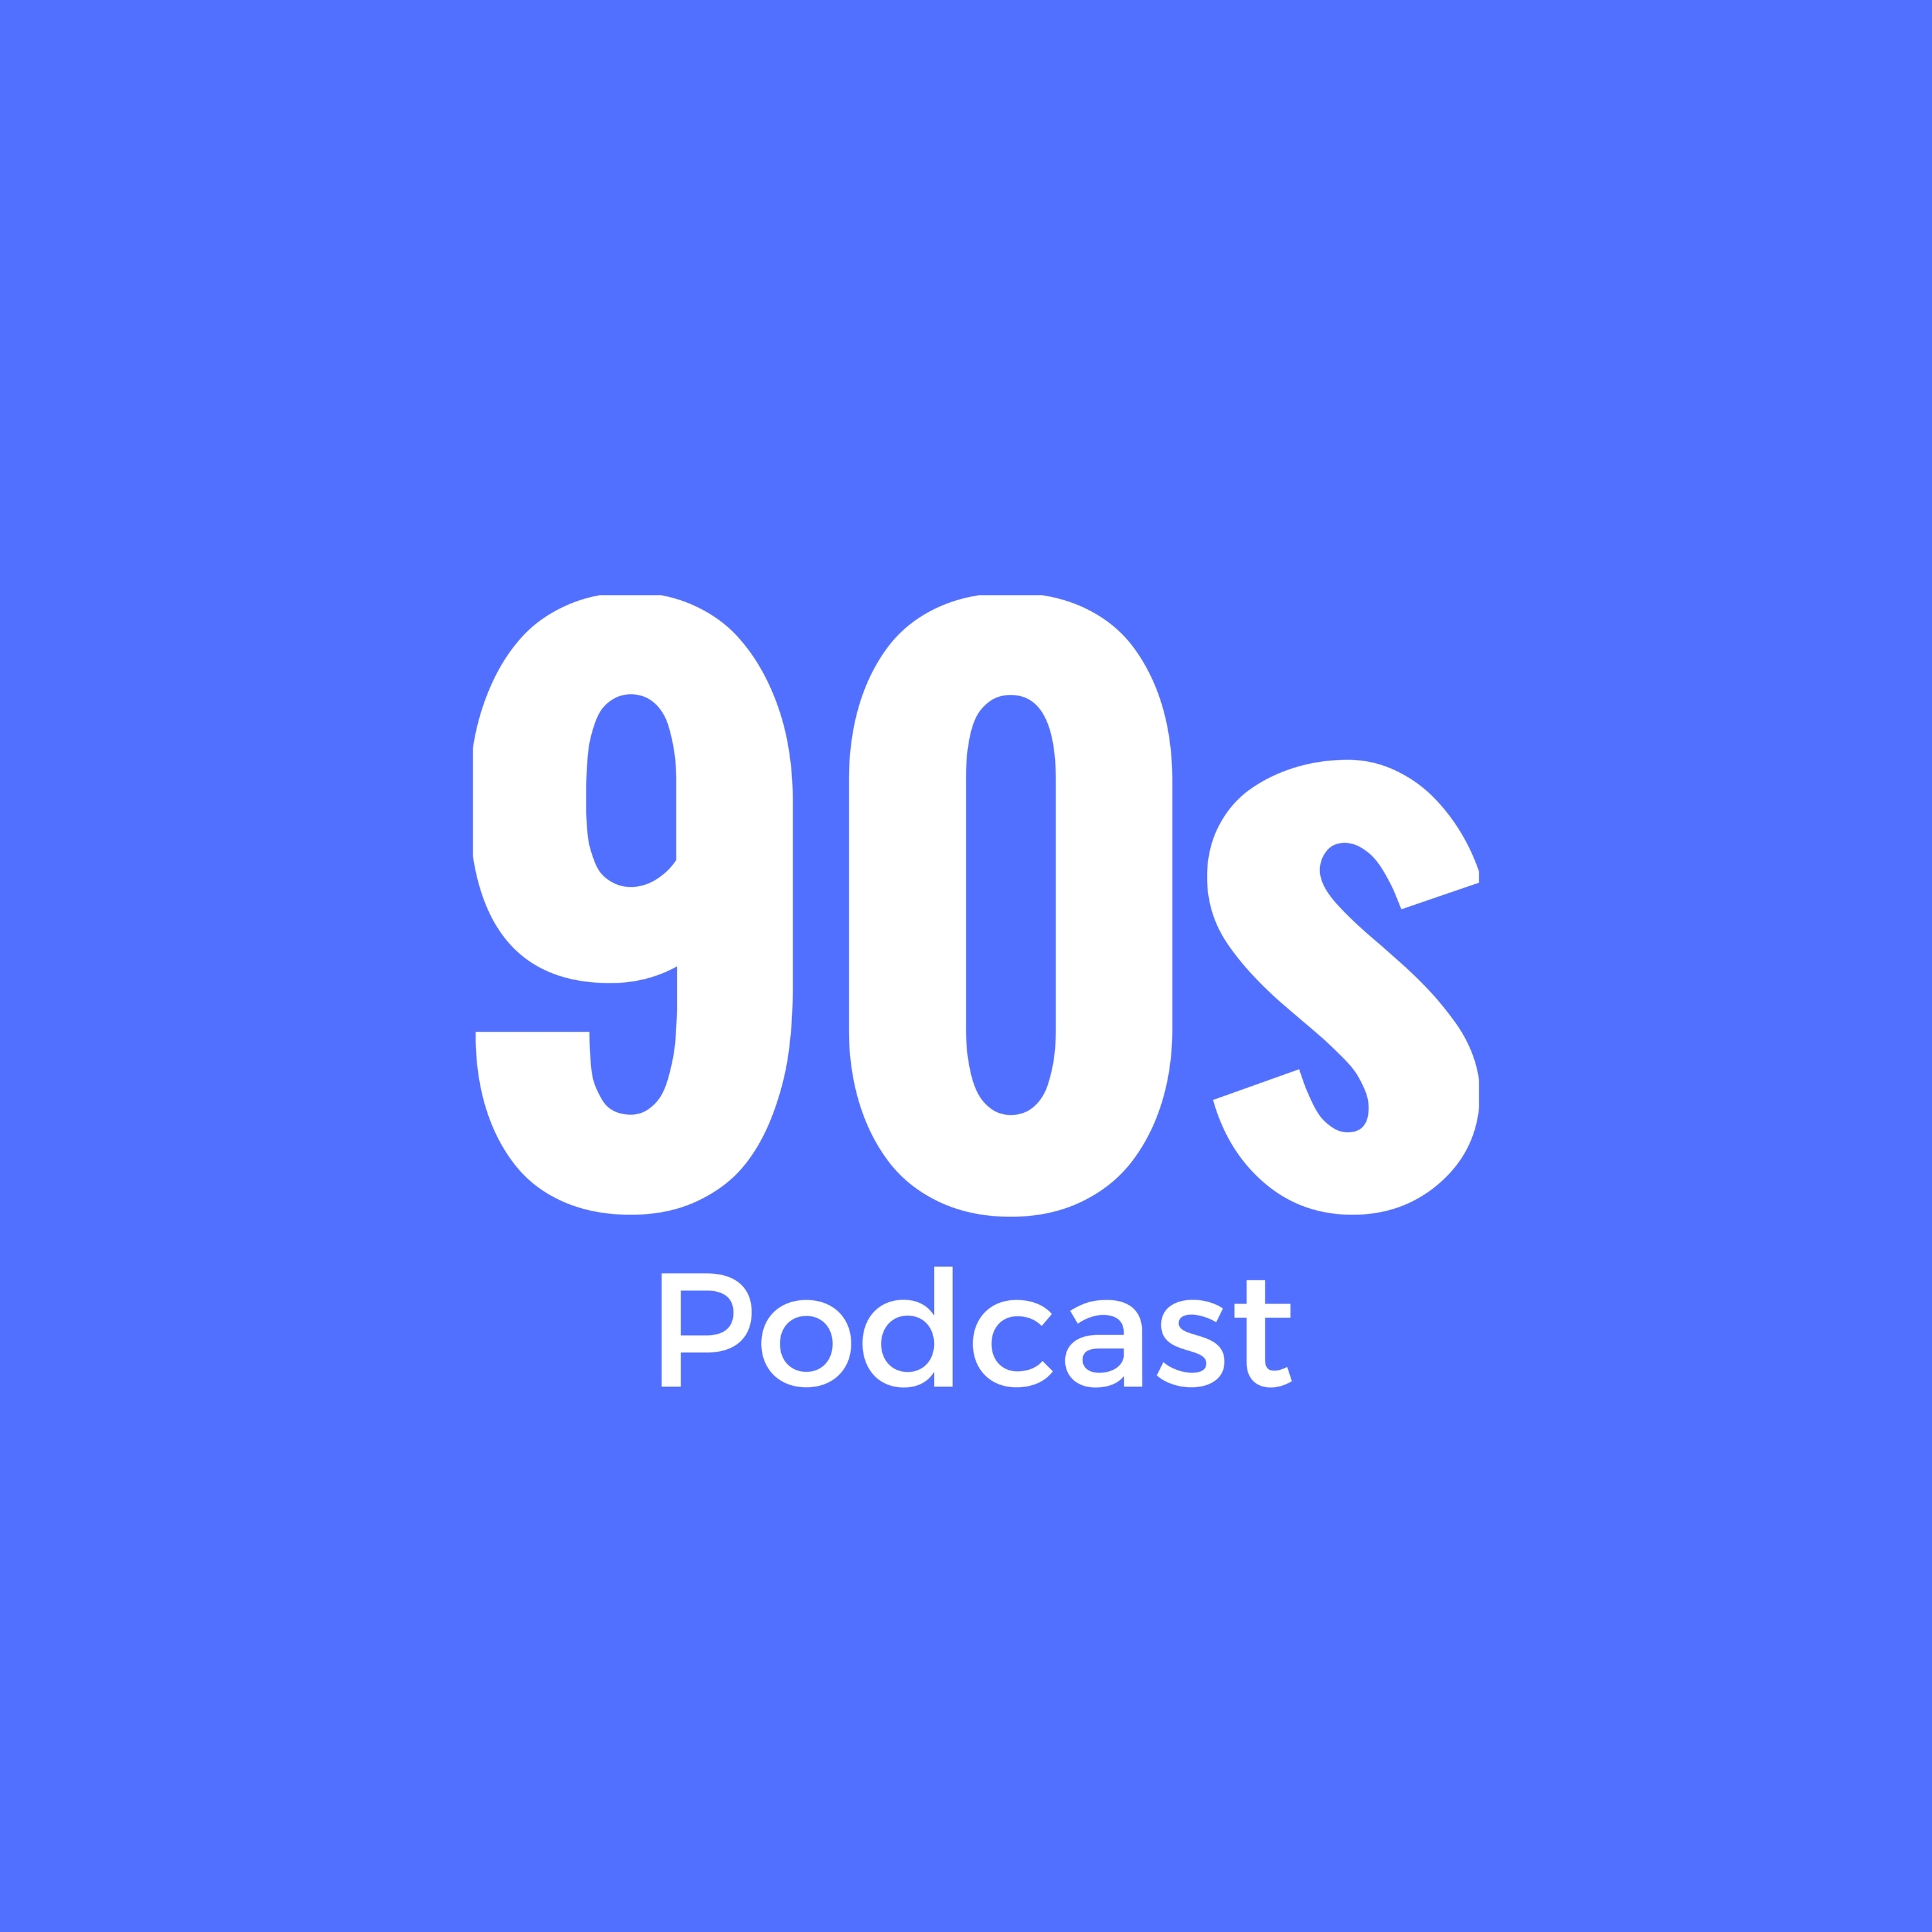 Episode 8 - One-Hit-Wonder der 90er Jahre